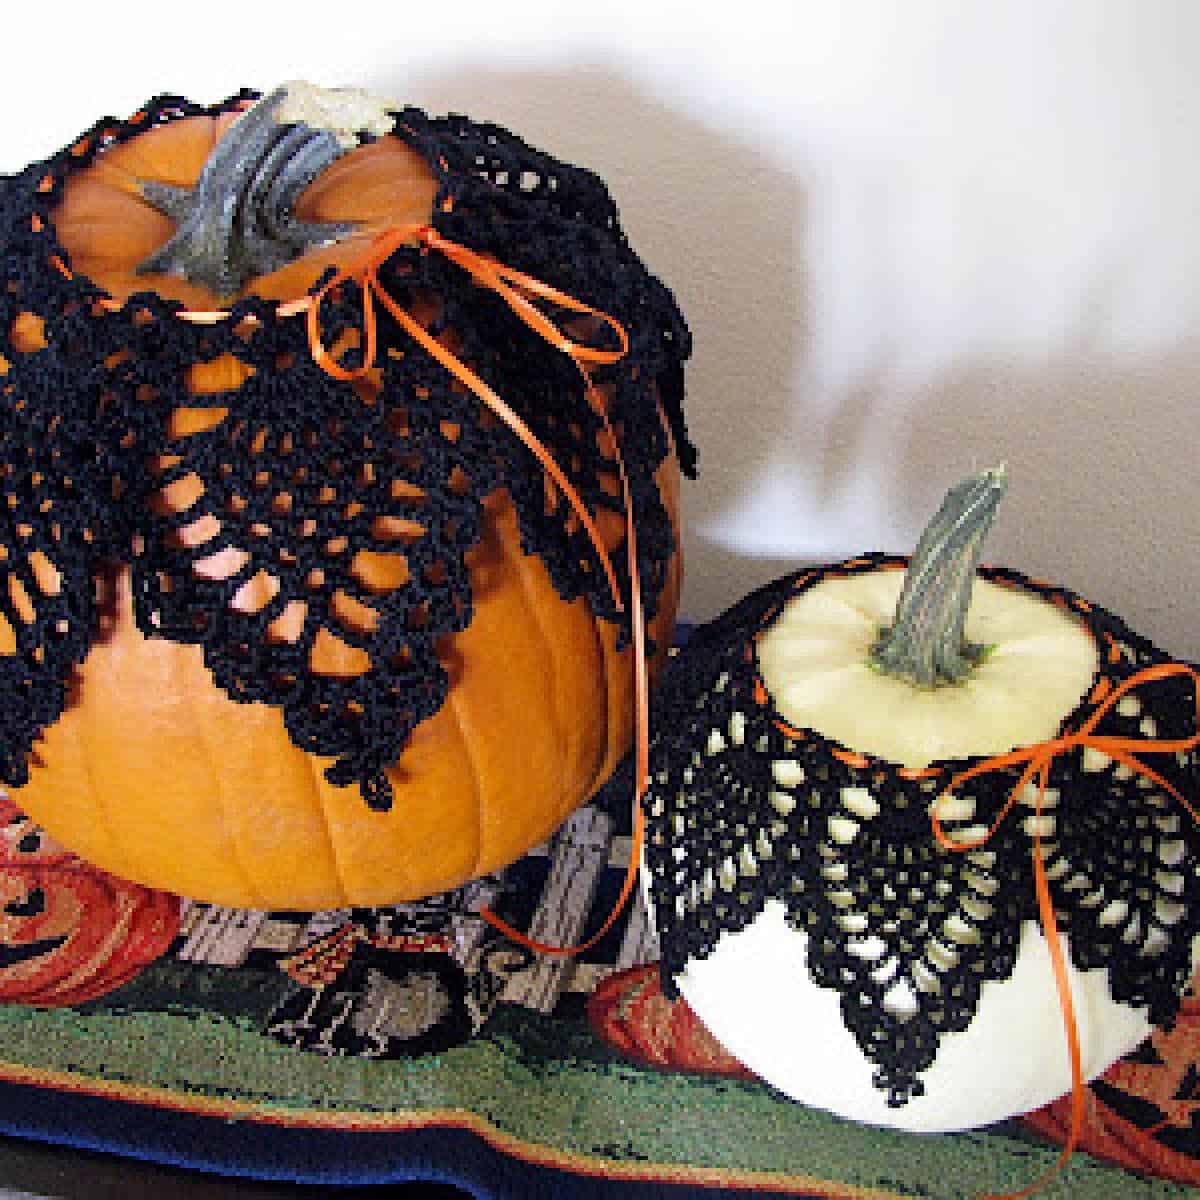 Crochet Pumpkin Doily Covers